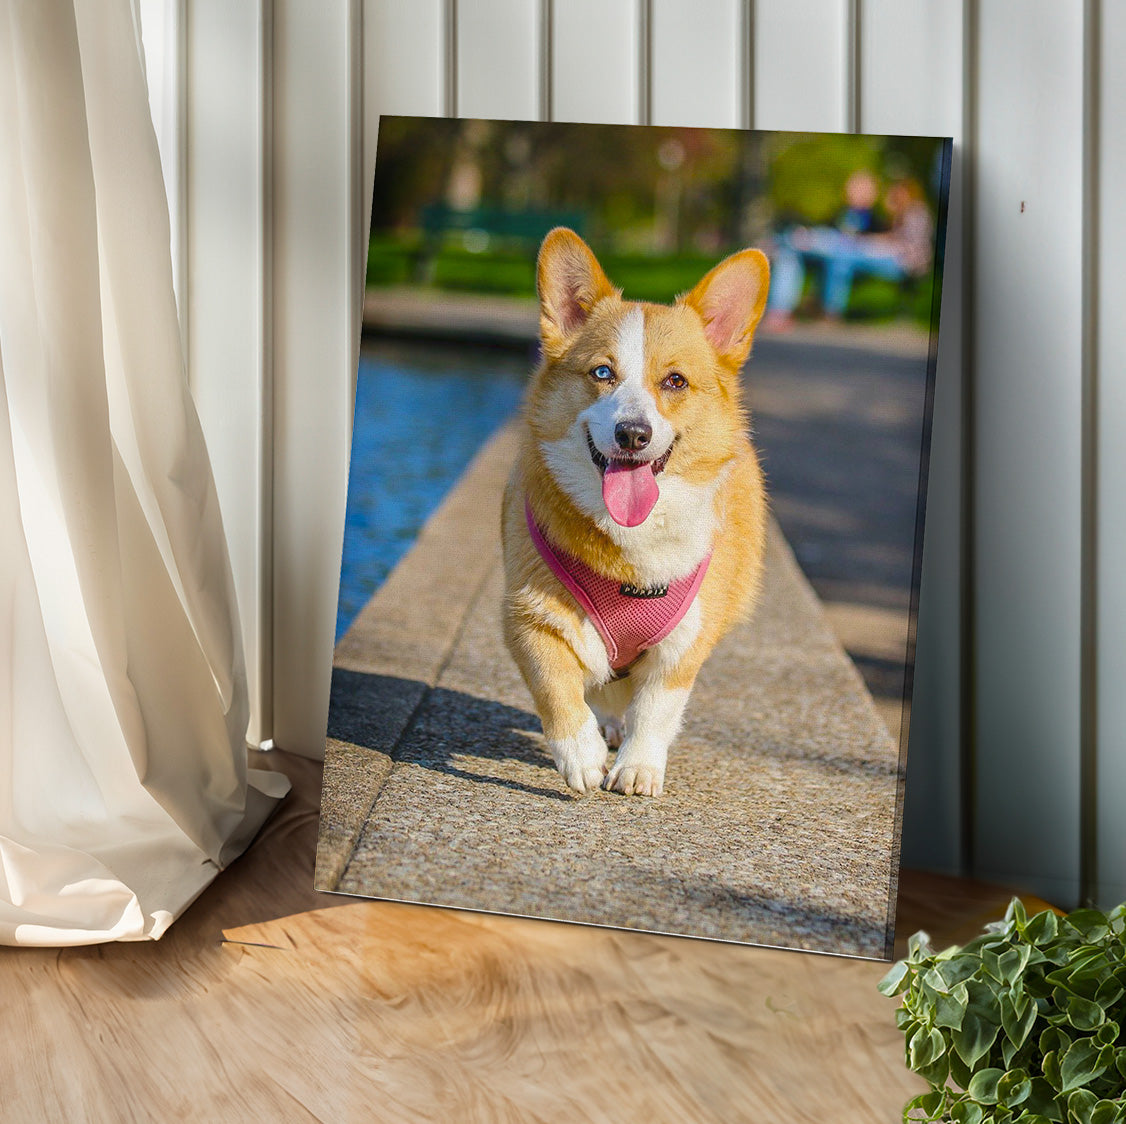 客製化寵物照片畫布列印